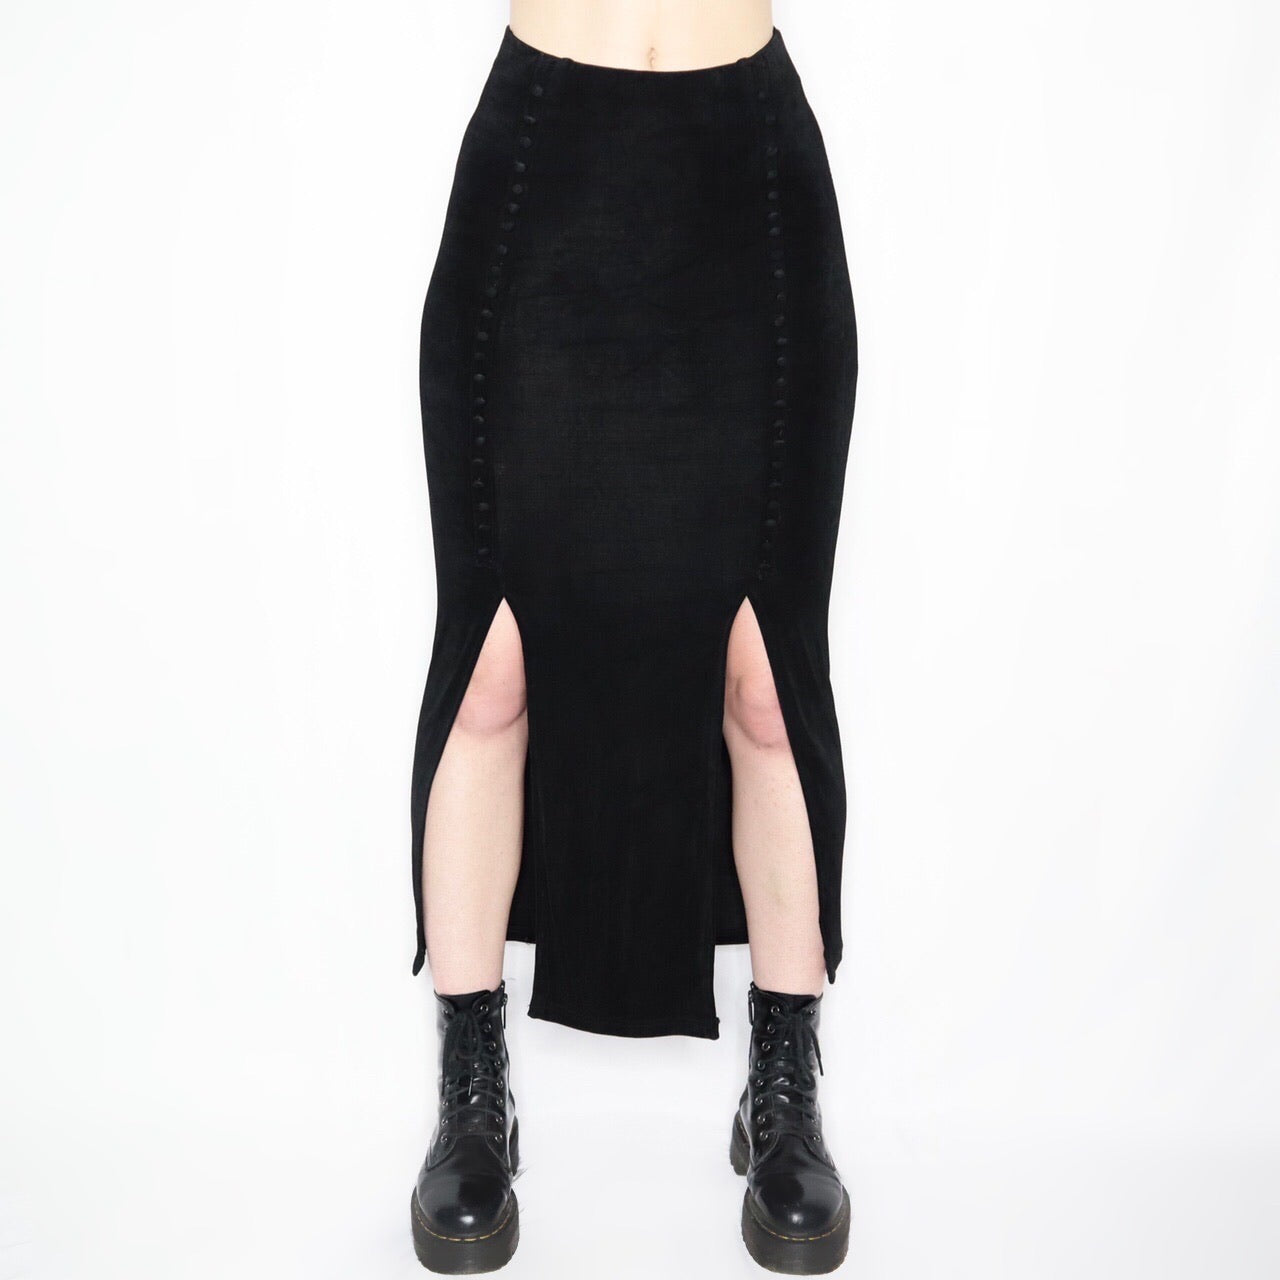 Vintage 90s Slinky Black Maxi Skirt